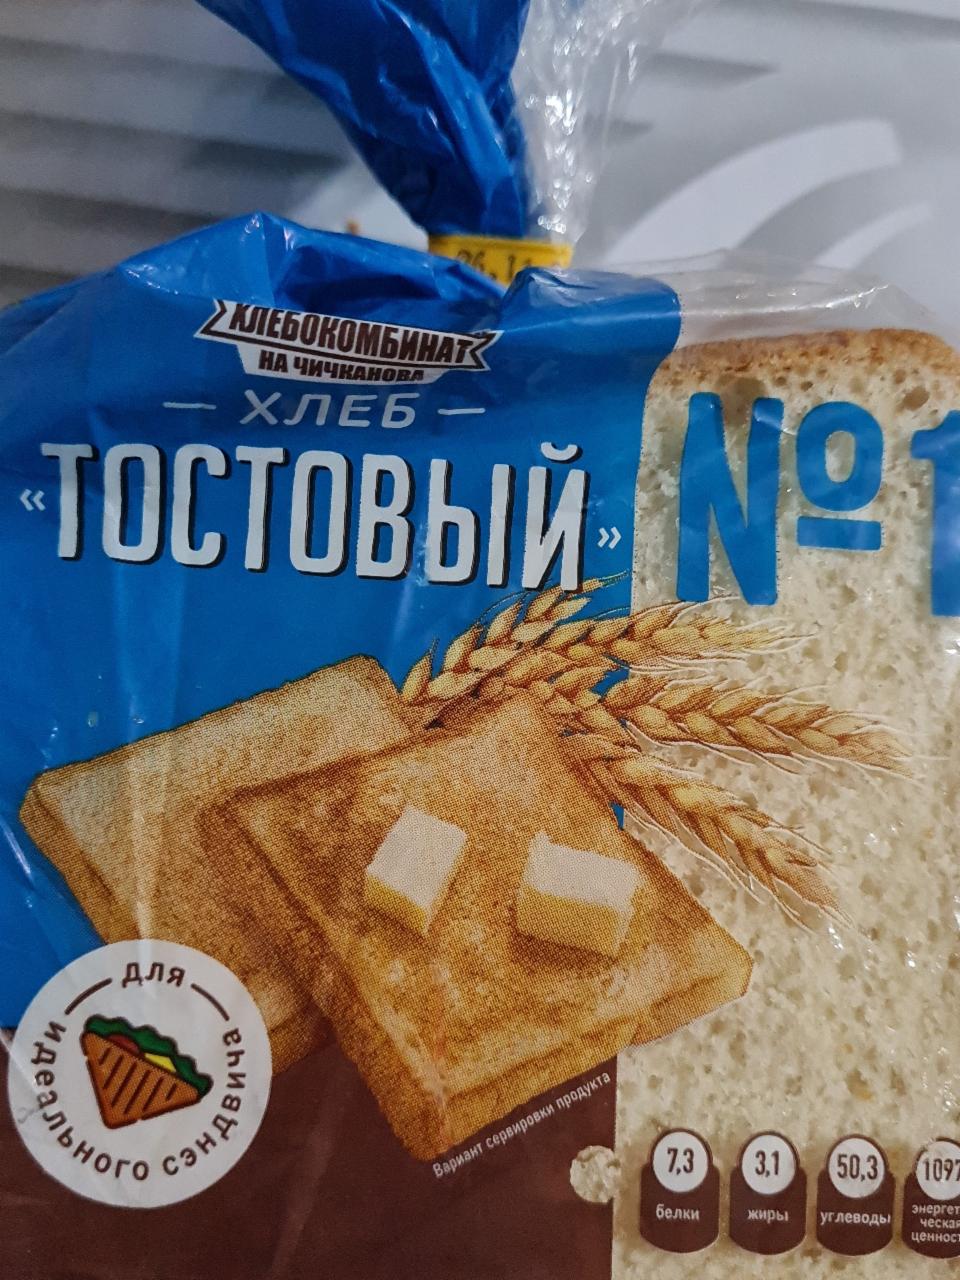 Фото - тостовый Хлеб 1 Хлебокомбинат на Чичканова